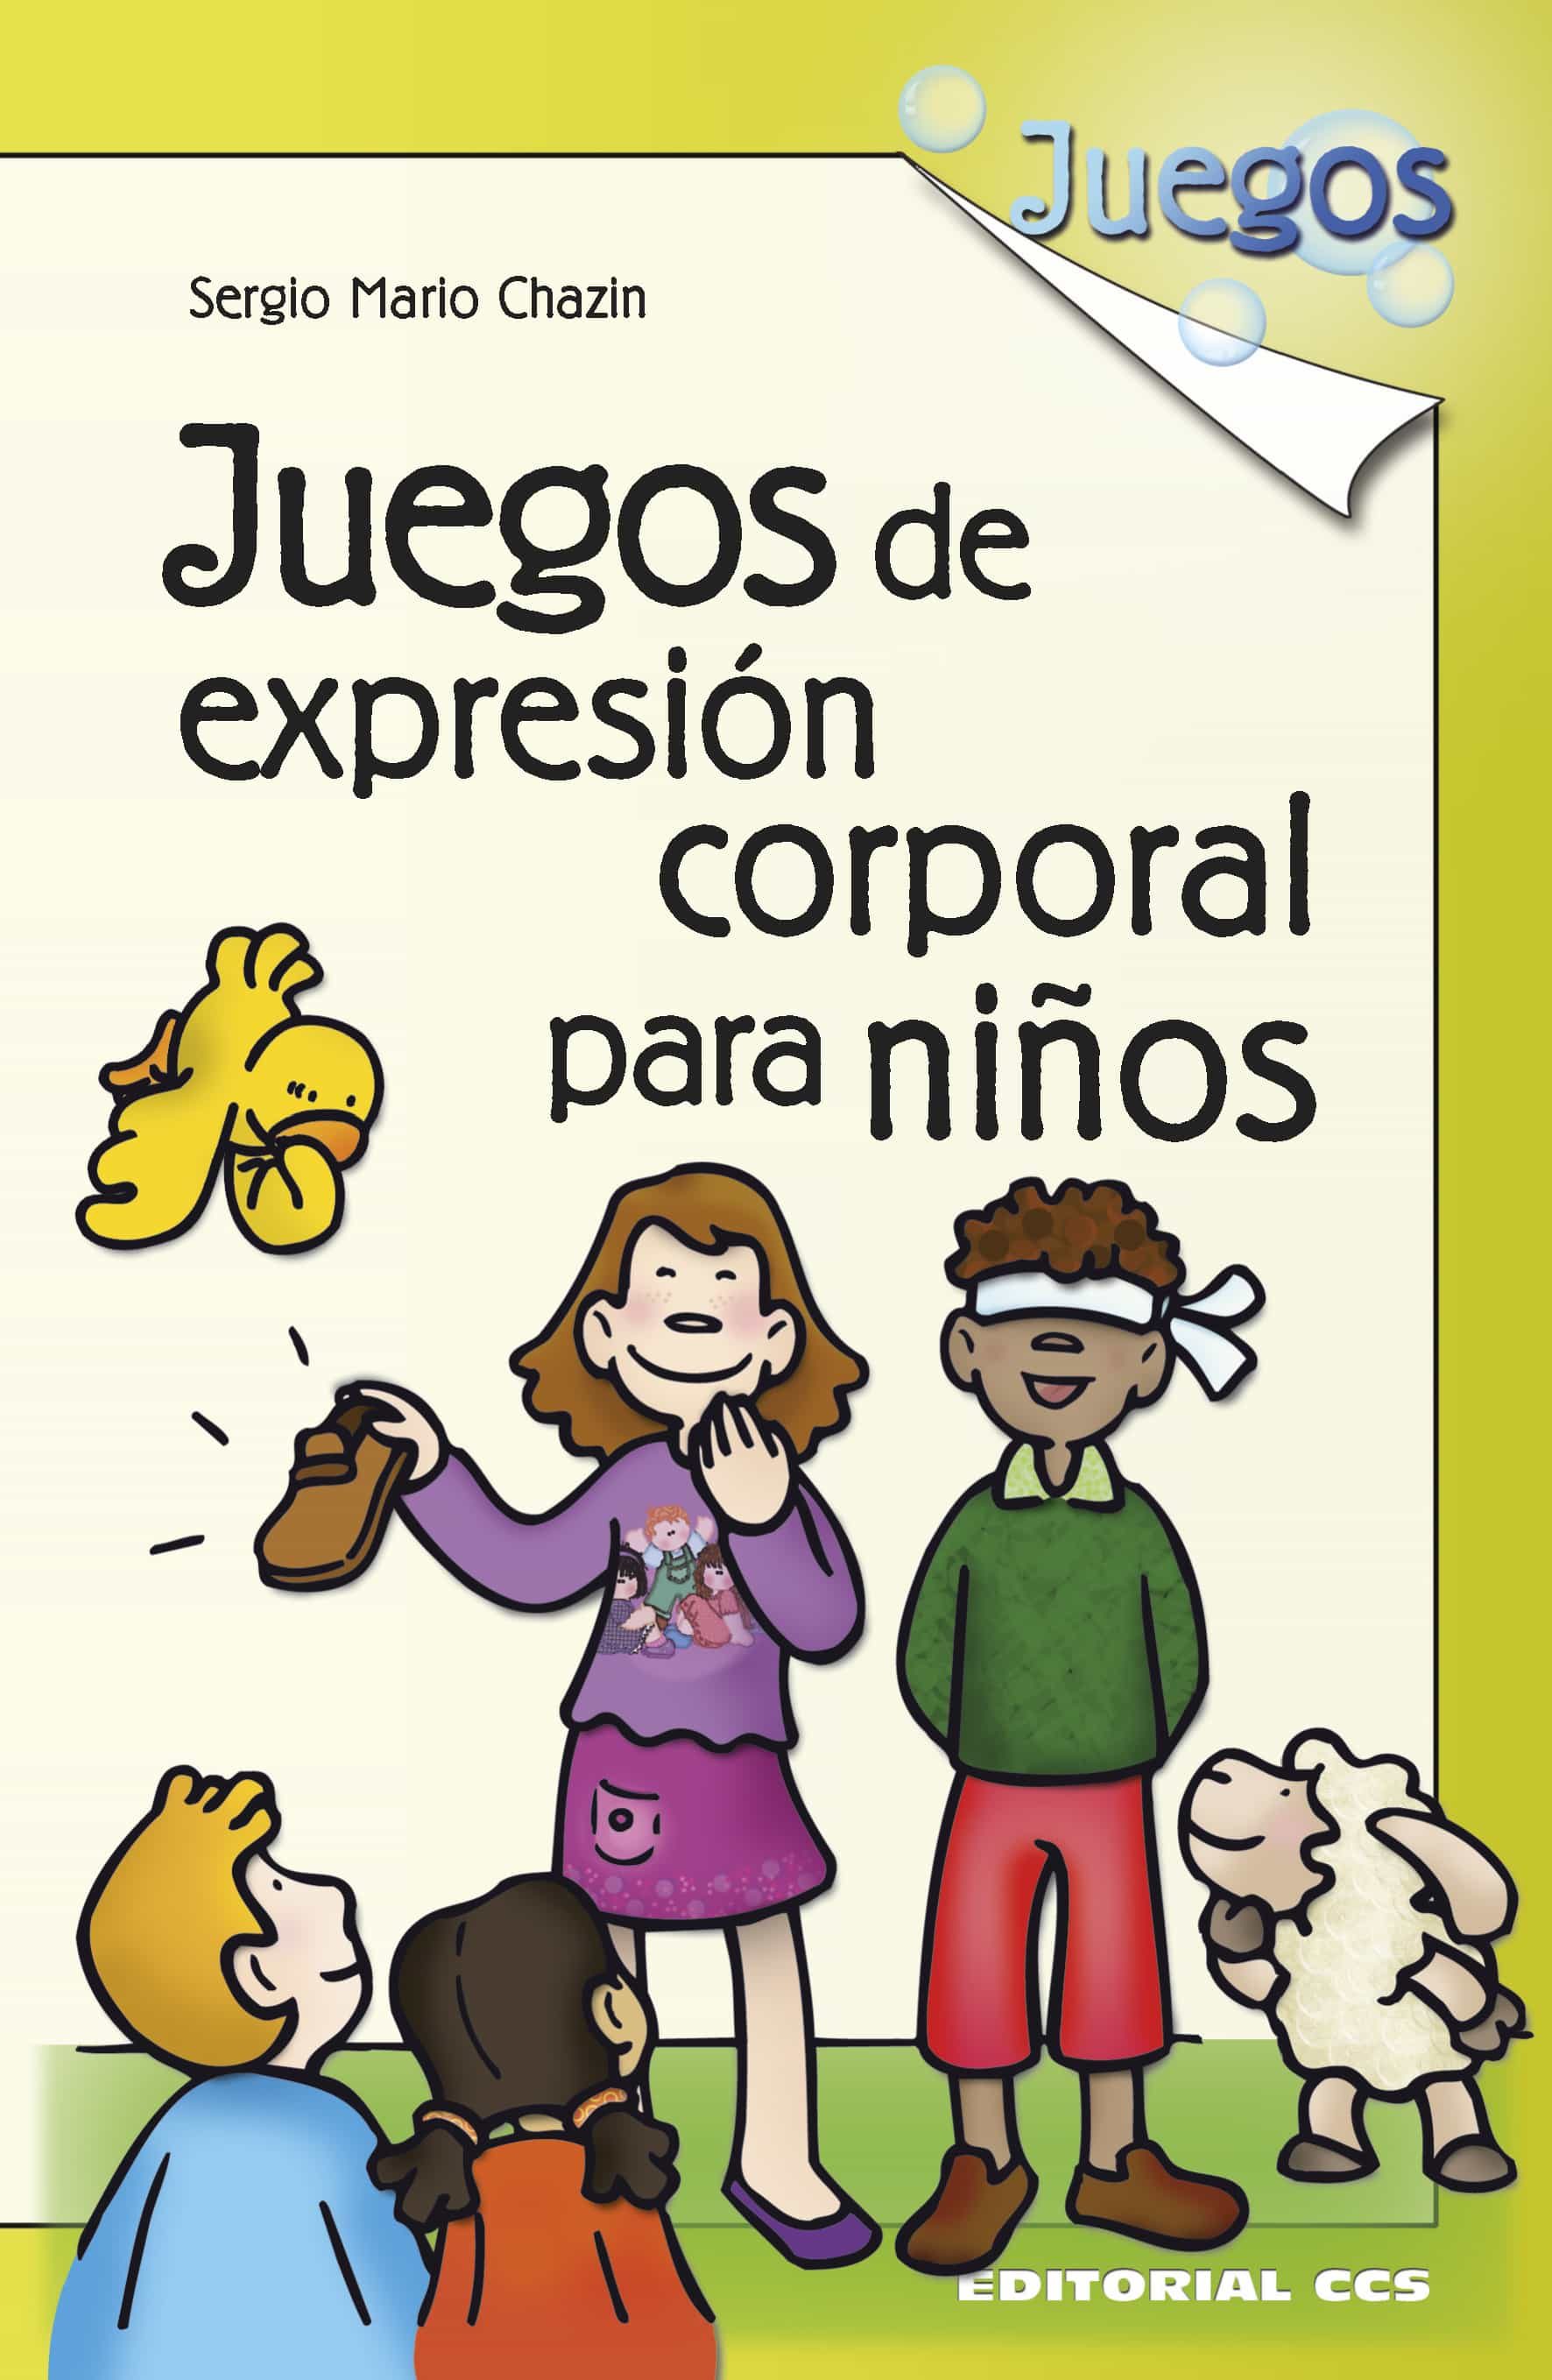 150 actividades para niños y niñas de 5 años (Libros De Actividades)  (Spanish Edition)